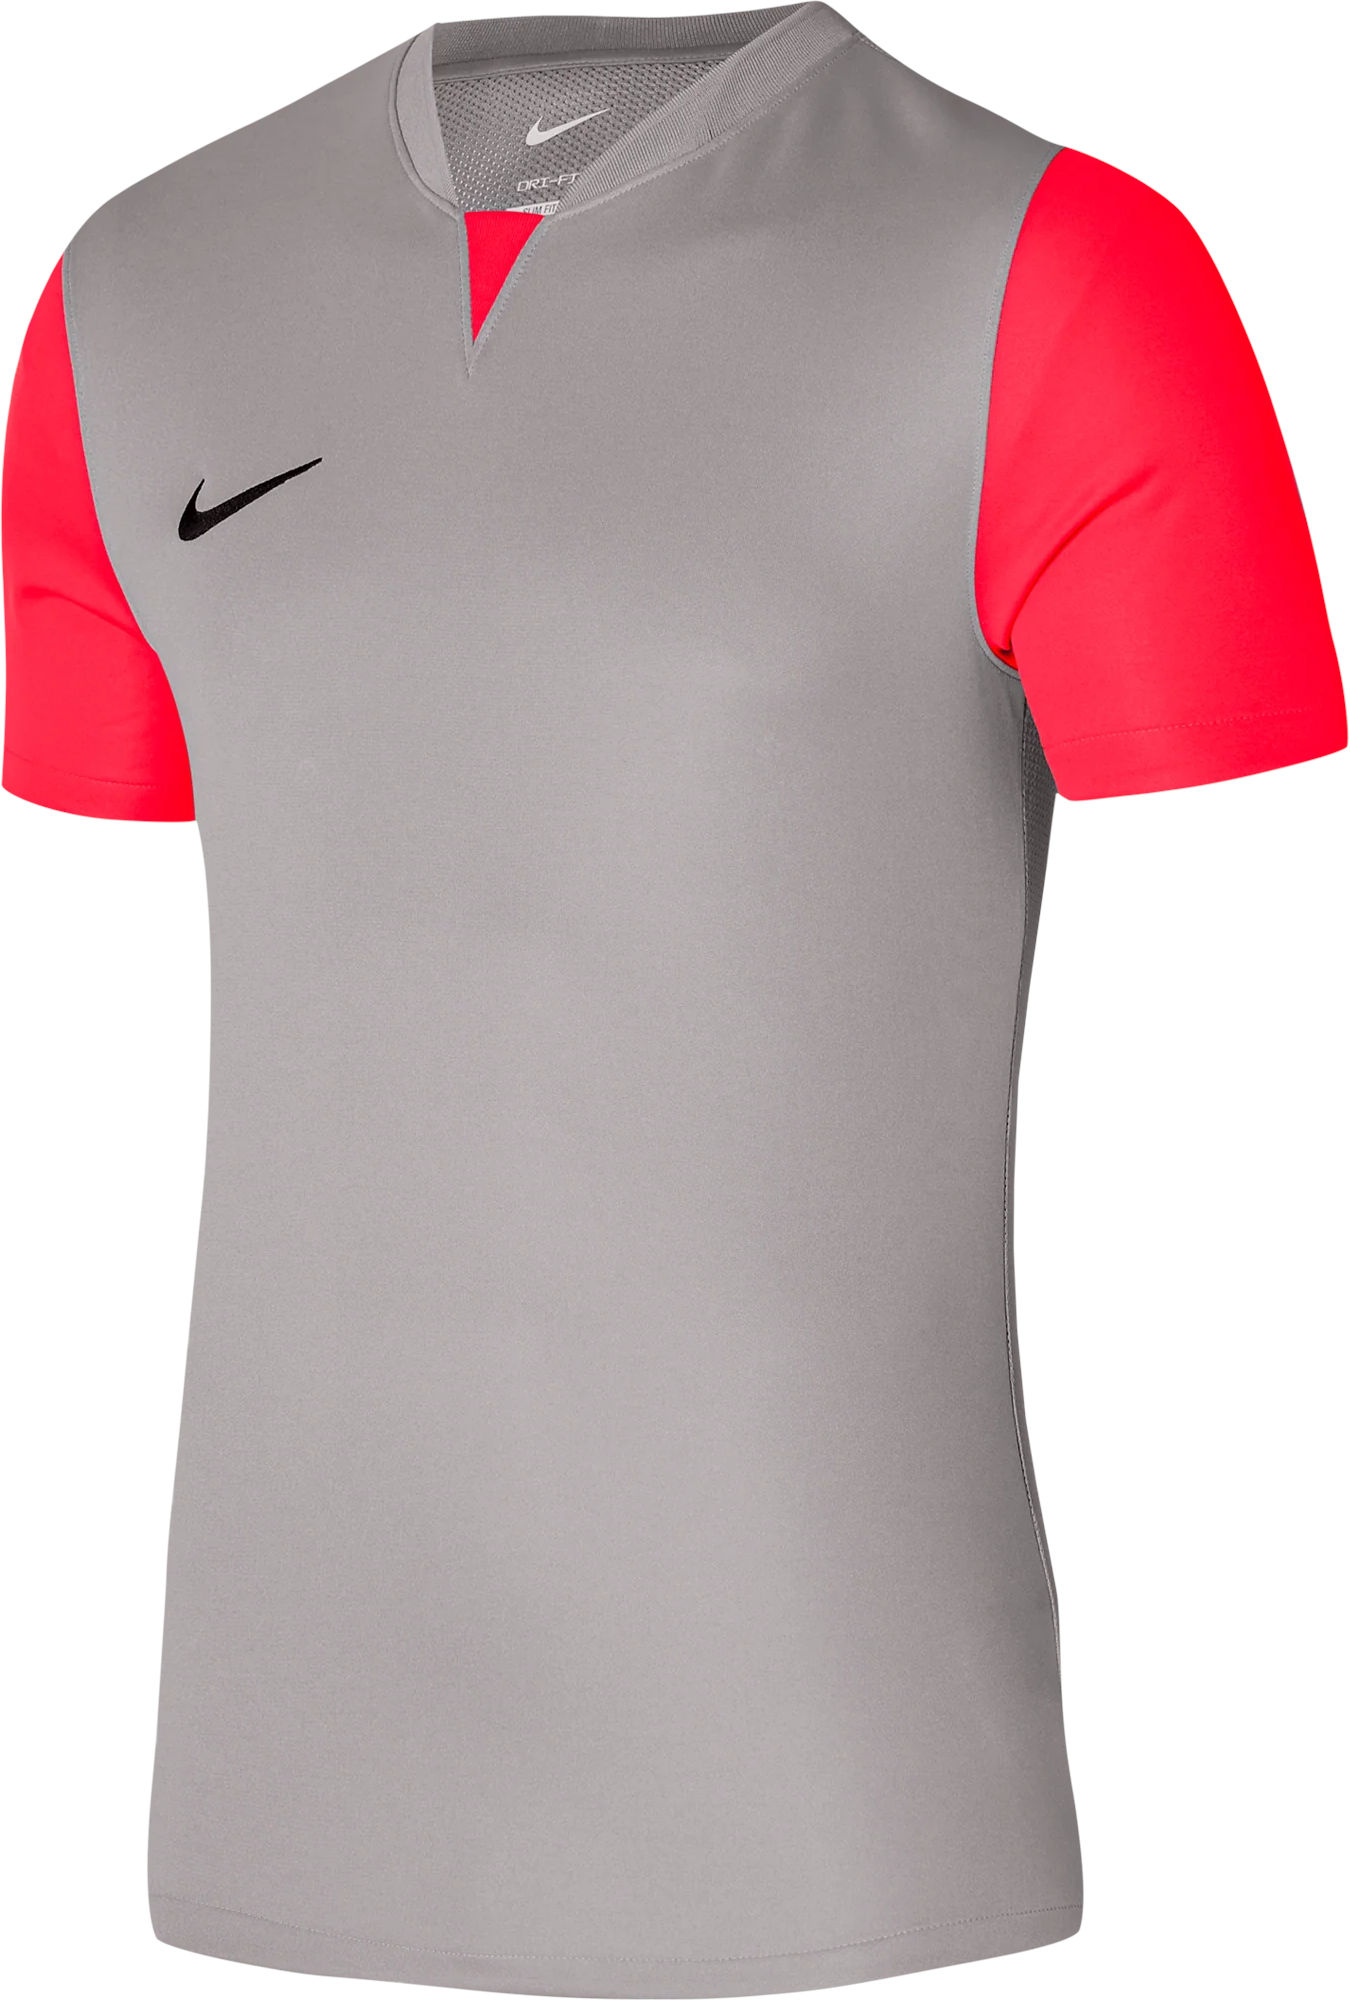 Camisa Nike outlet Y NK DF TROPHY V JSY SS